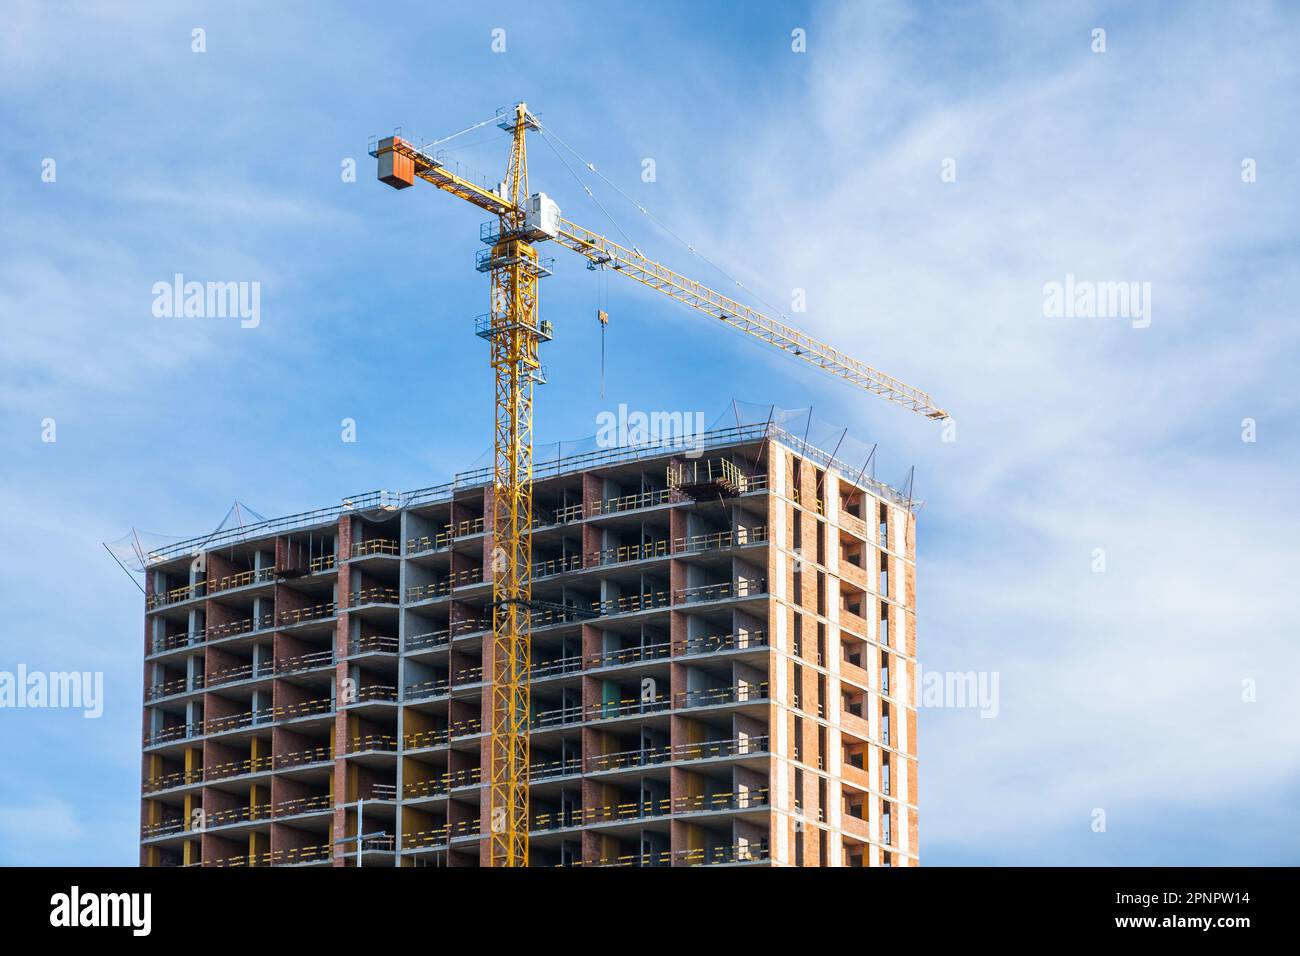 Grue et chantier de construction contre ciel bleu. Industrie de logement de nouveaux bâtiments. Concept industriel Banque D'Images